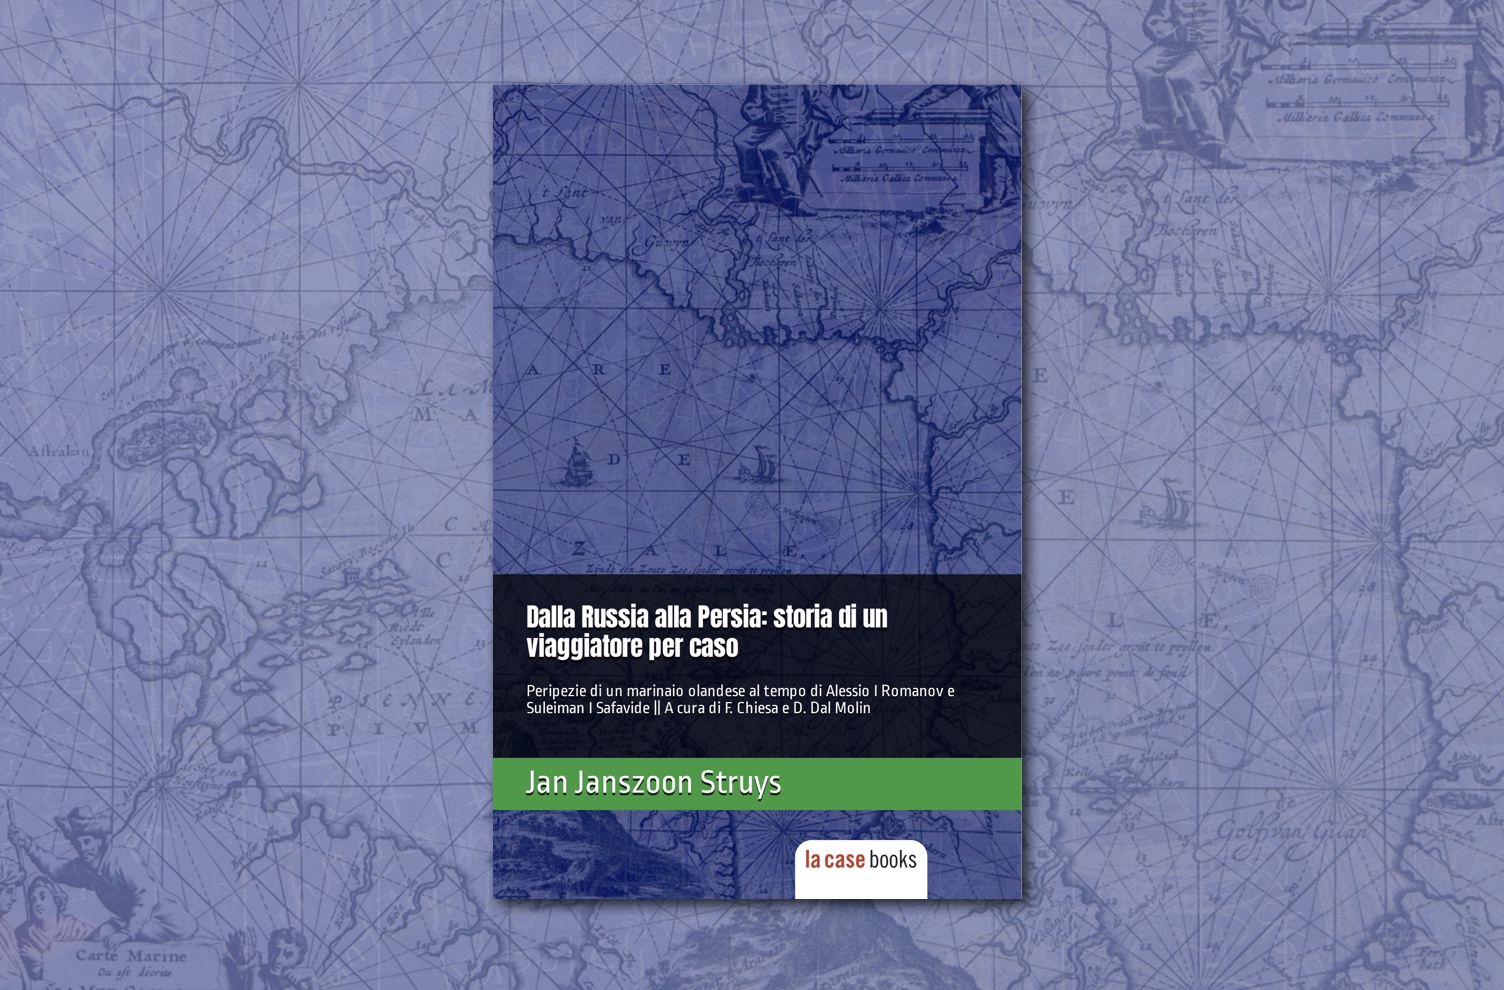 LA CASE Books pubblica la 1a edizione italiana dei viaggi di Struys, che raccontano la Russia e la Persia del ‘600, ma anche quella di oggi.